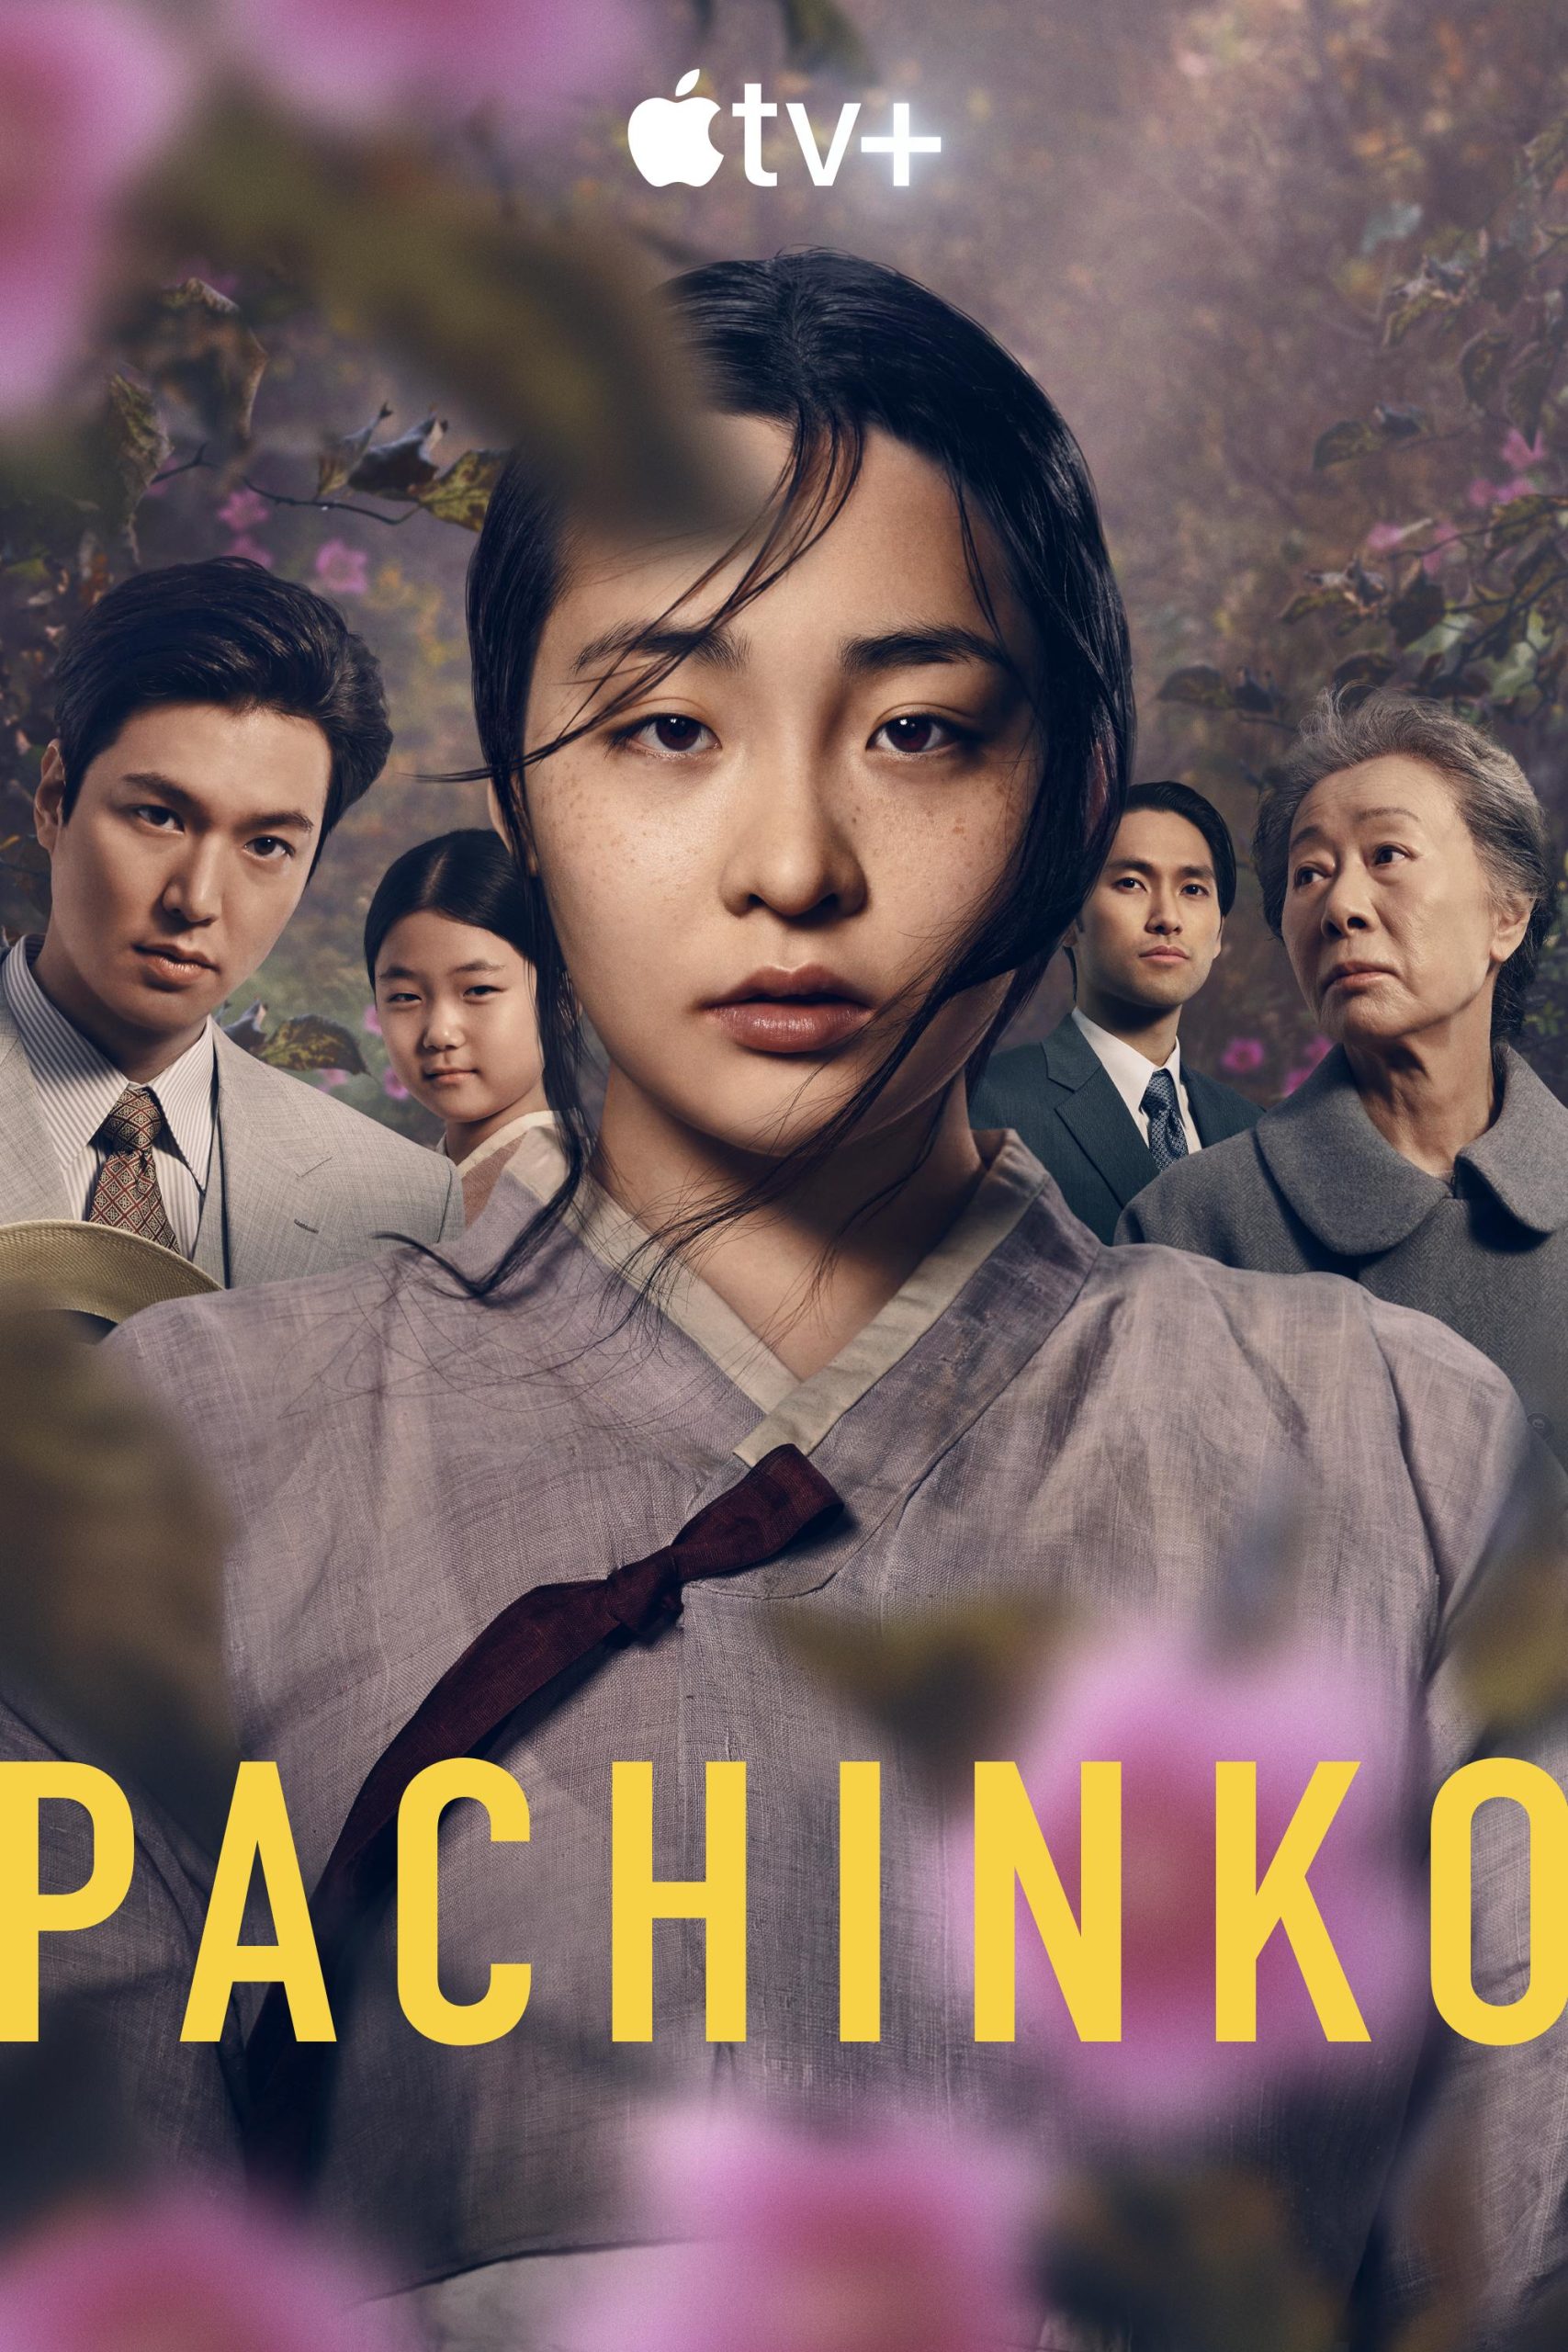 مشاهدة مسلسل باتشينكو Pachinko الحلقة 6 السادسة مترجمة